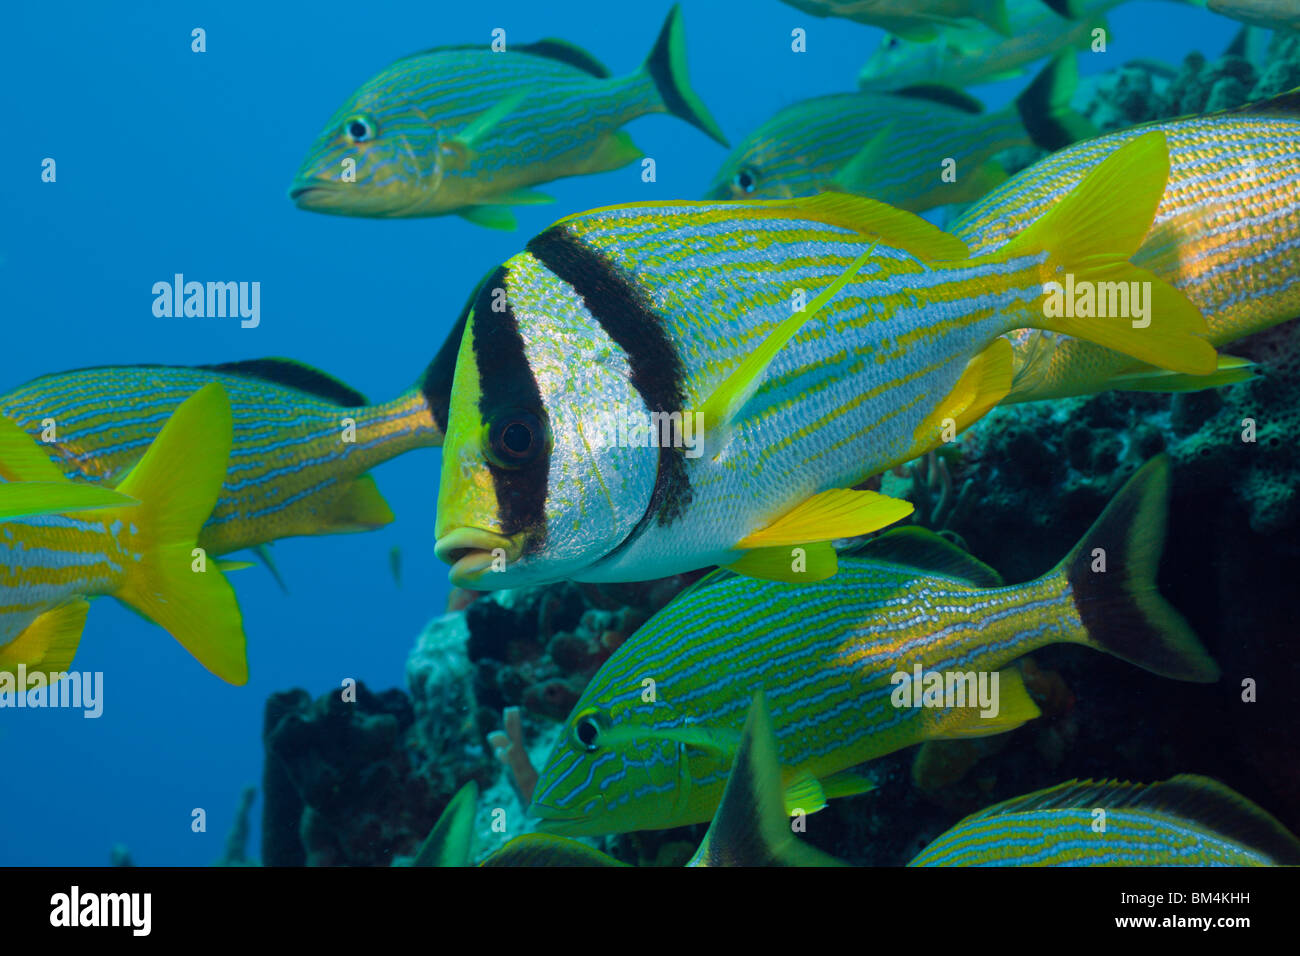 Porkfish and Bluestriped Grunt, Anisotremus virginicus, Haemulon sciurus, Cozumel, Caribbean Sea, Mexico Stock Photo